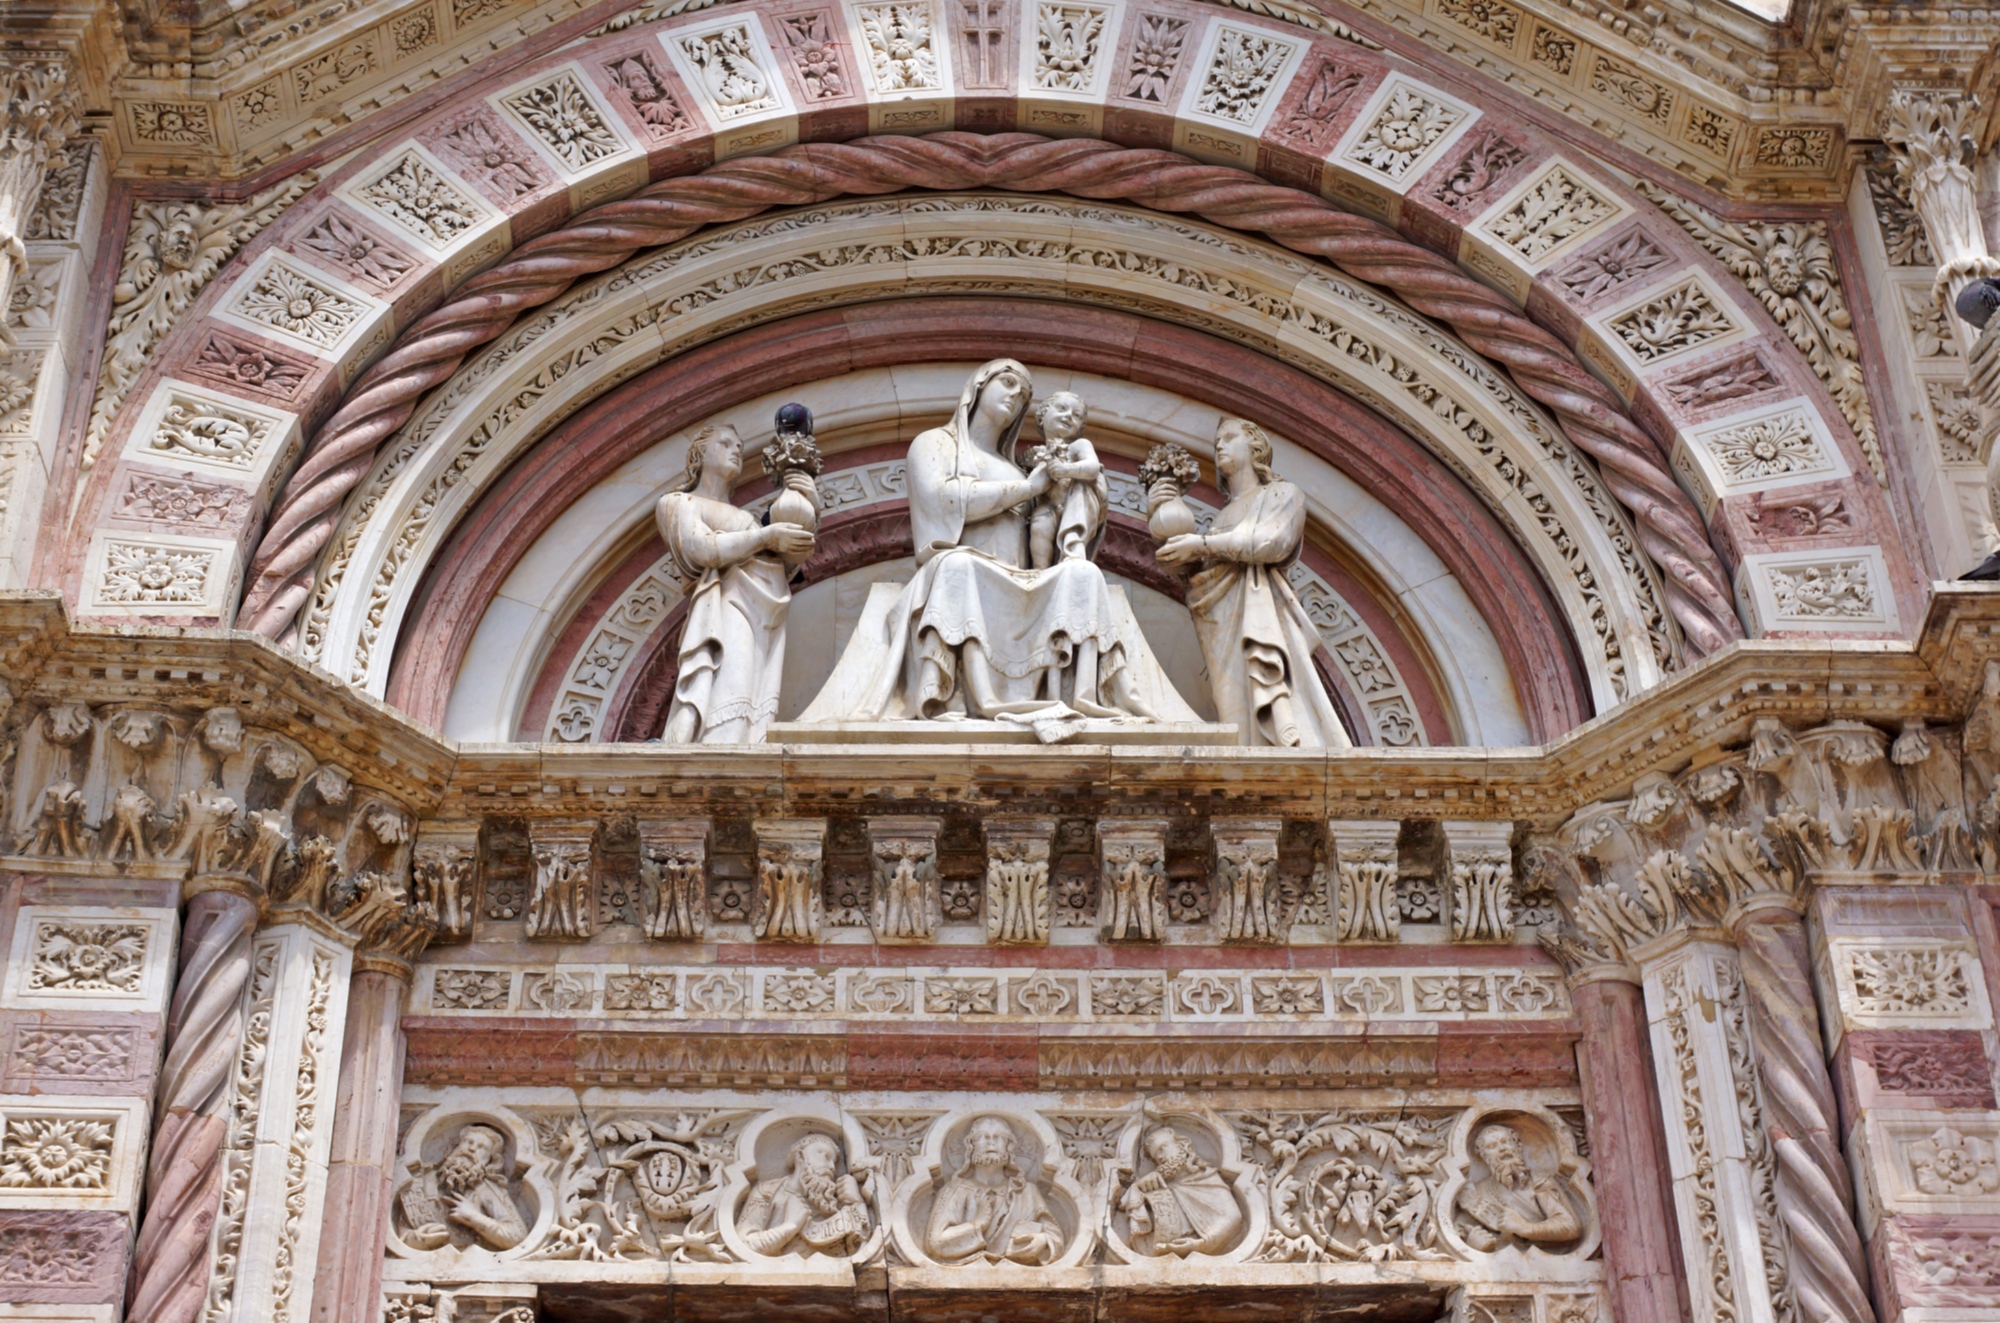 La façade de la Cathédrale